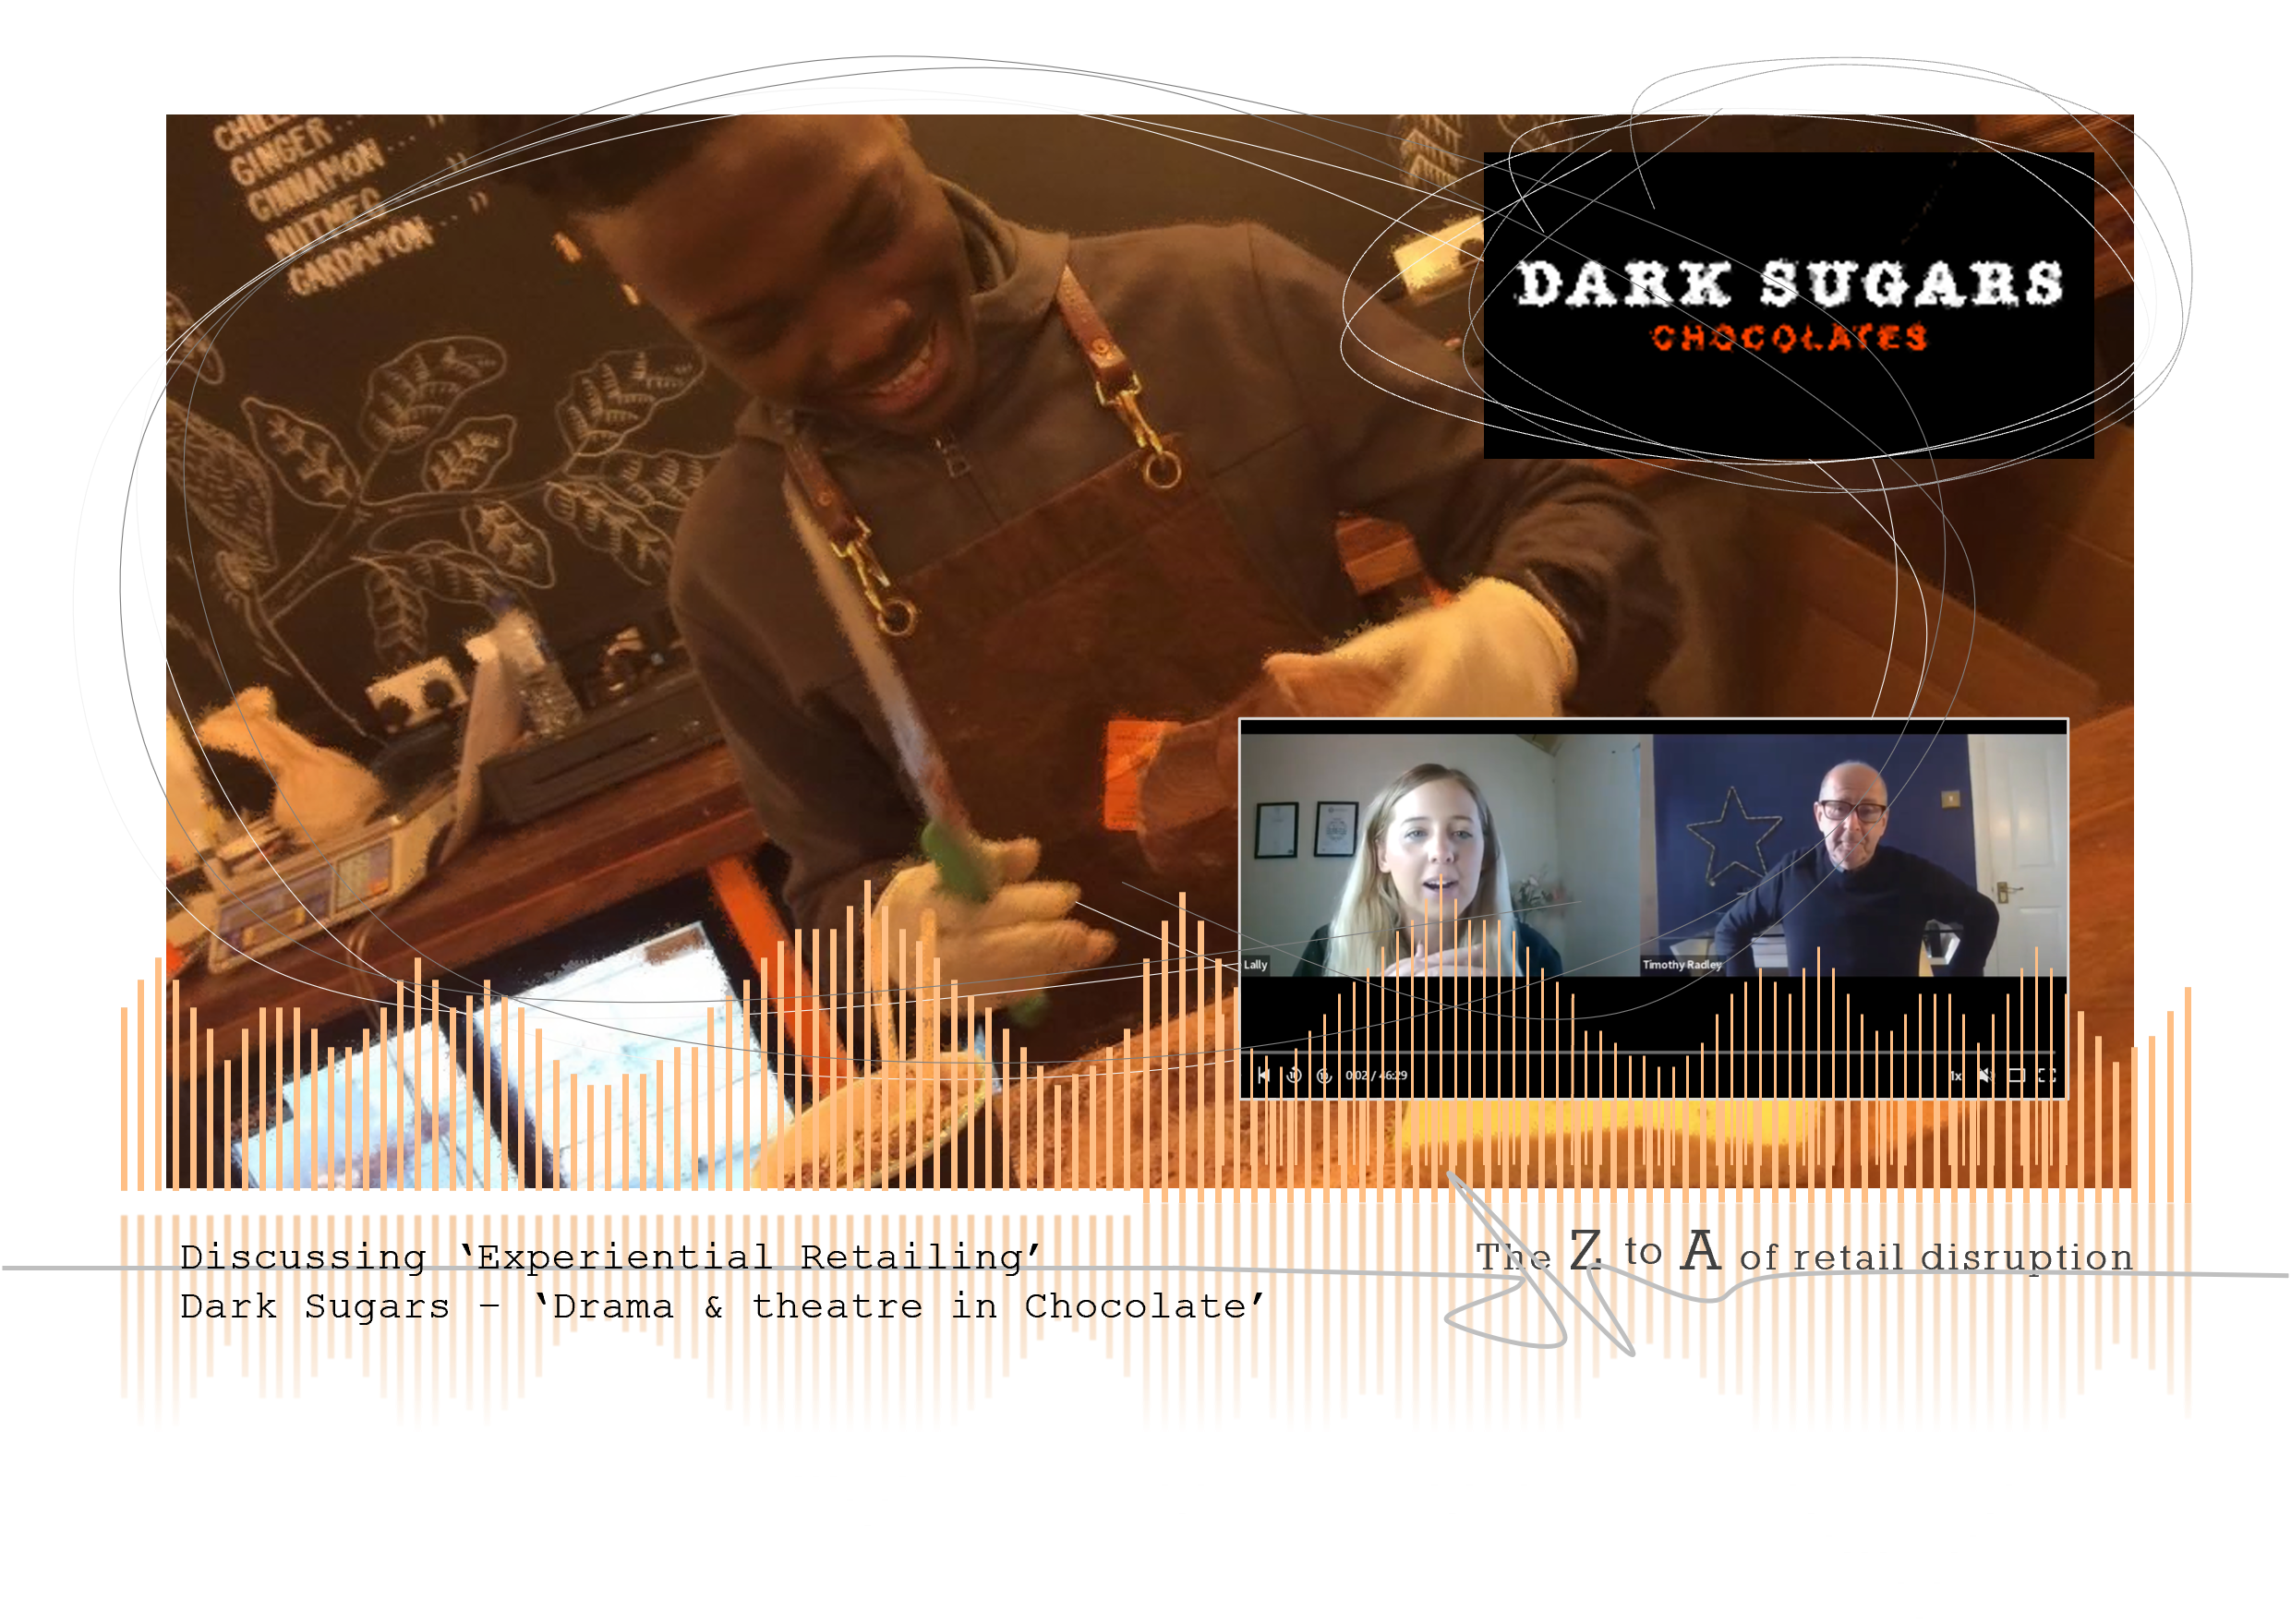 Discussing ‘Experiential Retailing’: Dark Sugars – ‘Drama & theatre in Chocolate’